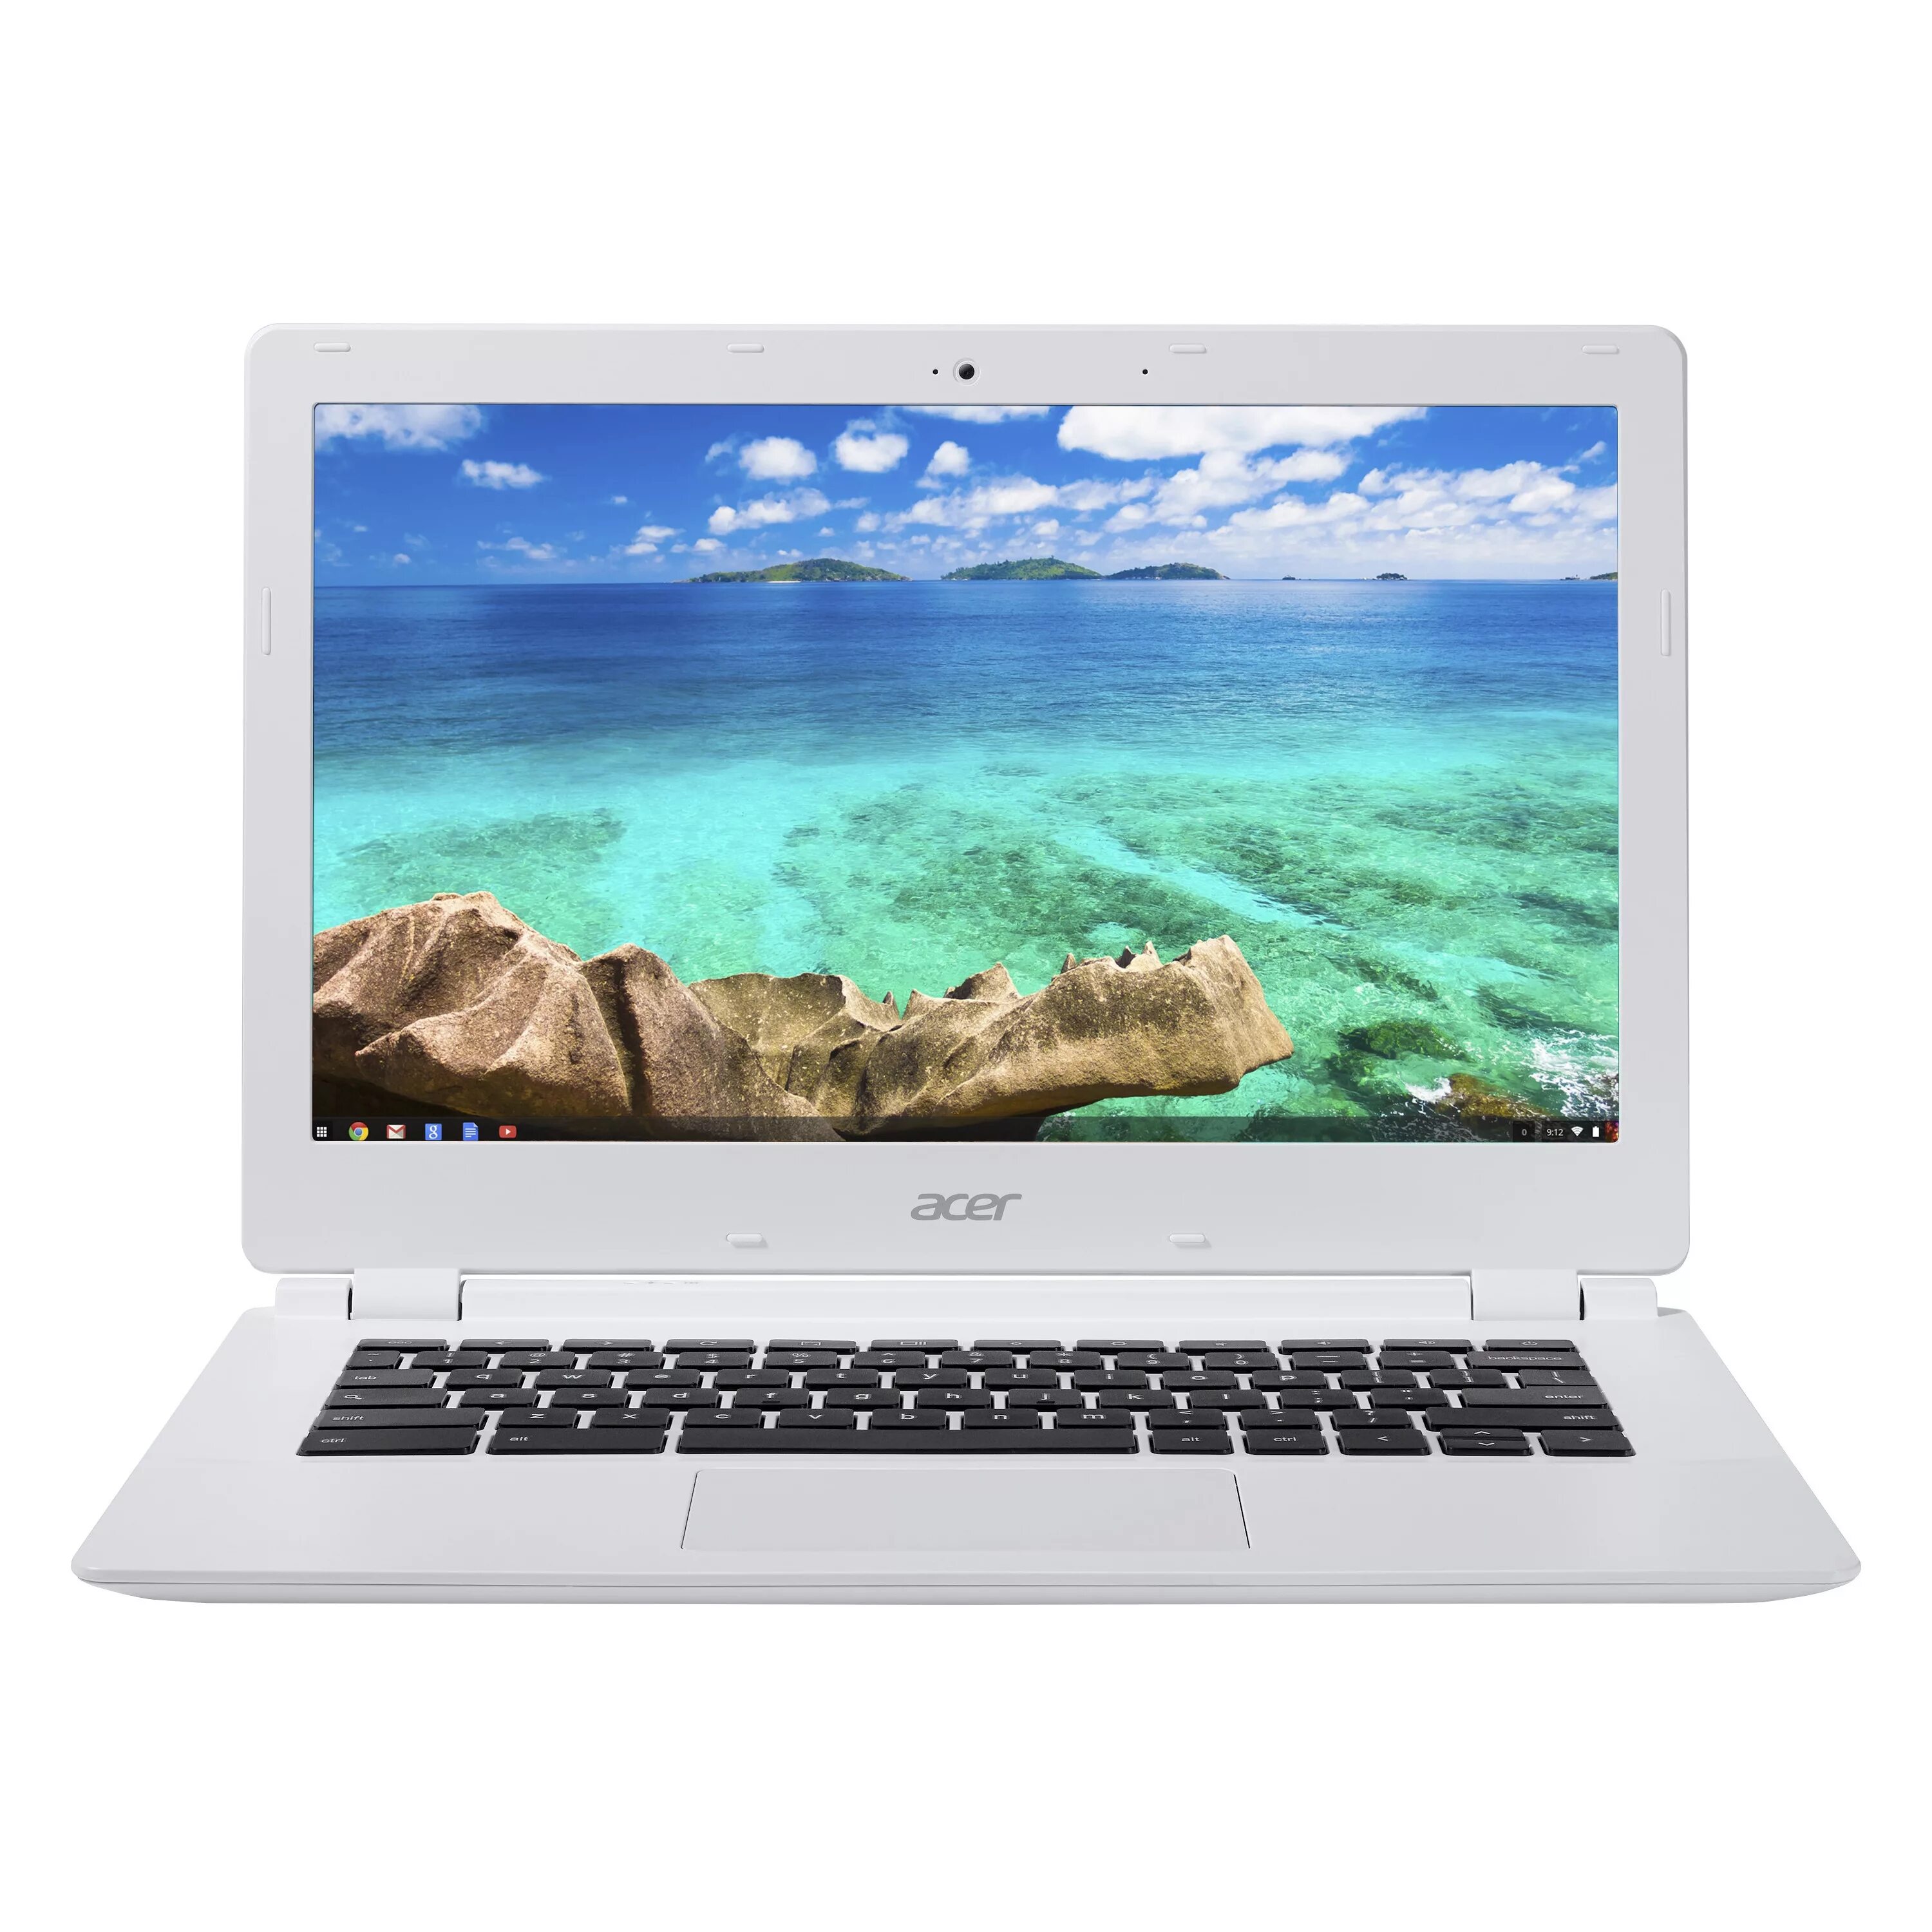 Ноутбук ips 15.6 1920x1080. CB- 571 Chromebook. CB- 571 Chromebook матрица. Хромбук Acer. Экран ноутбука 15,6 дюйма.